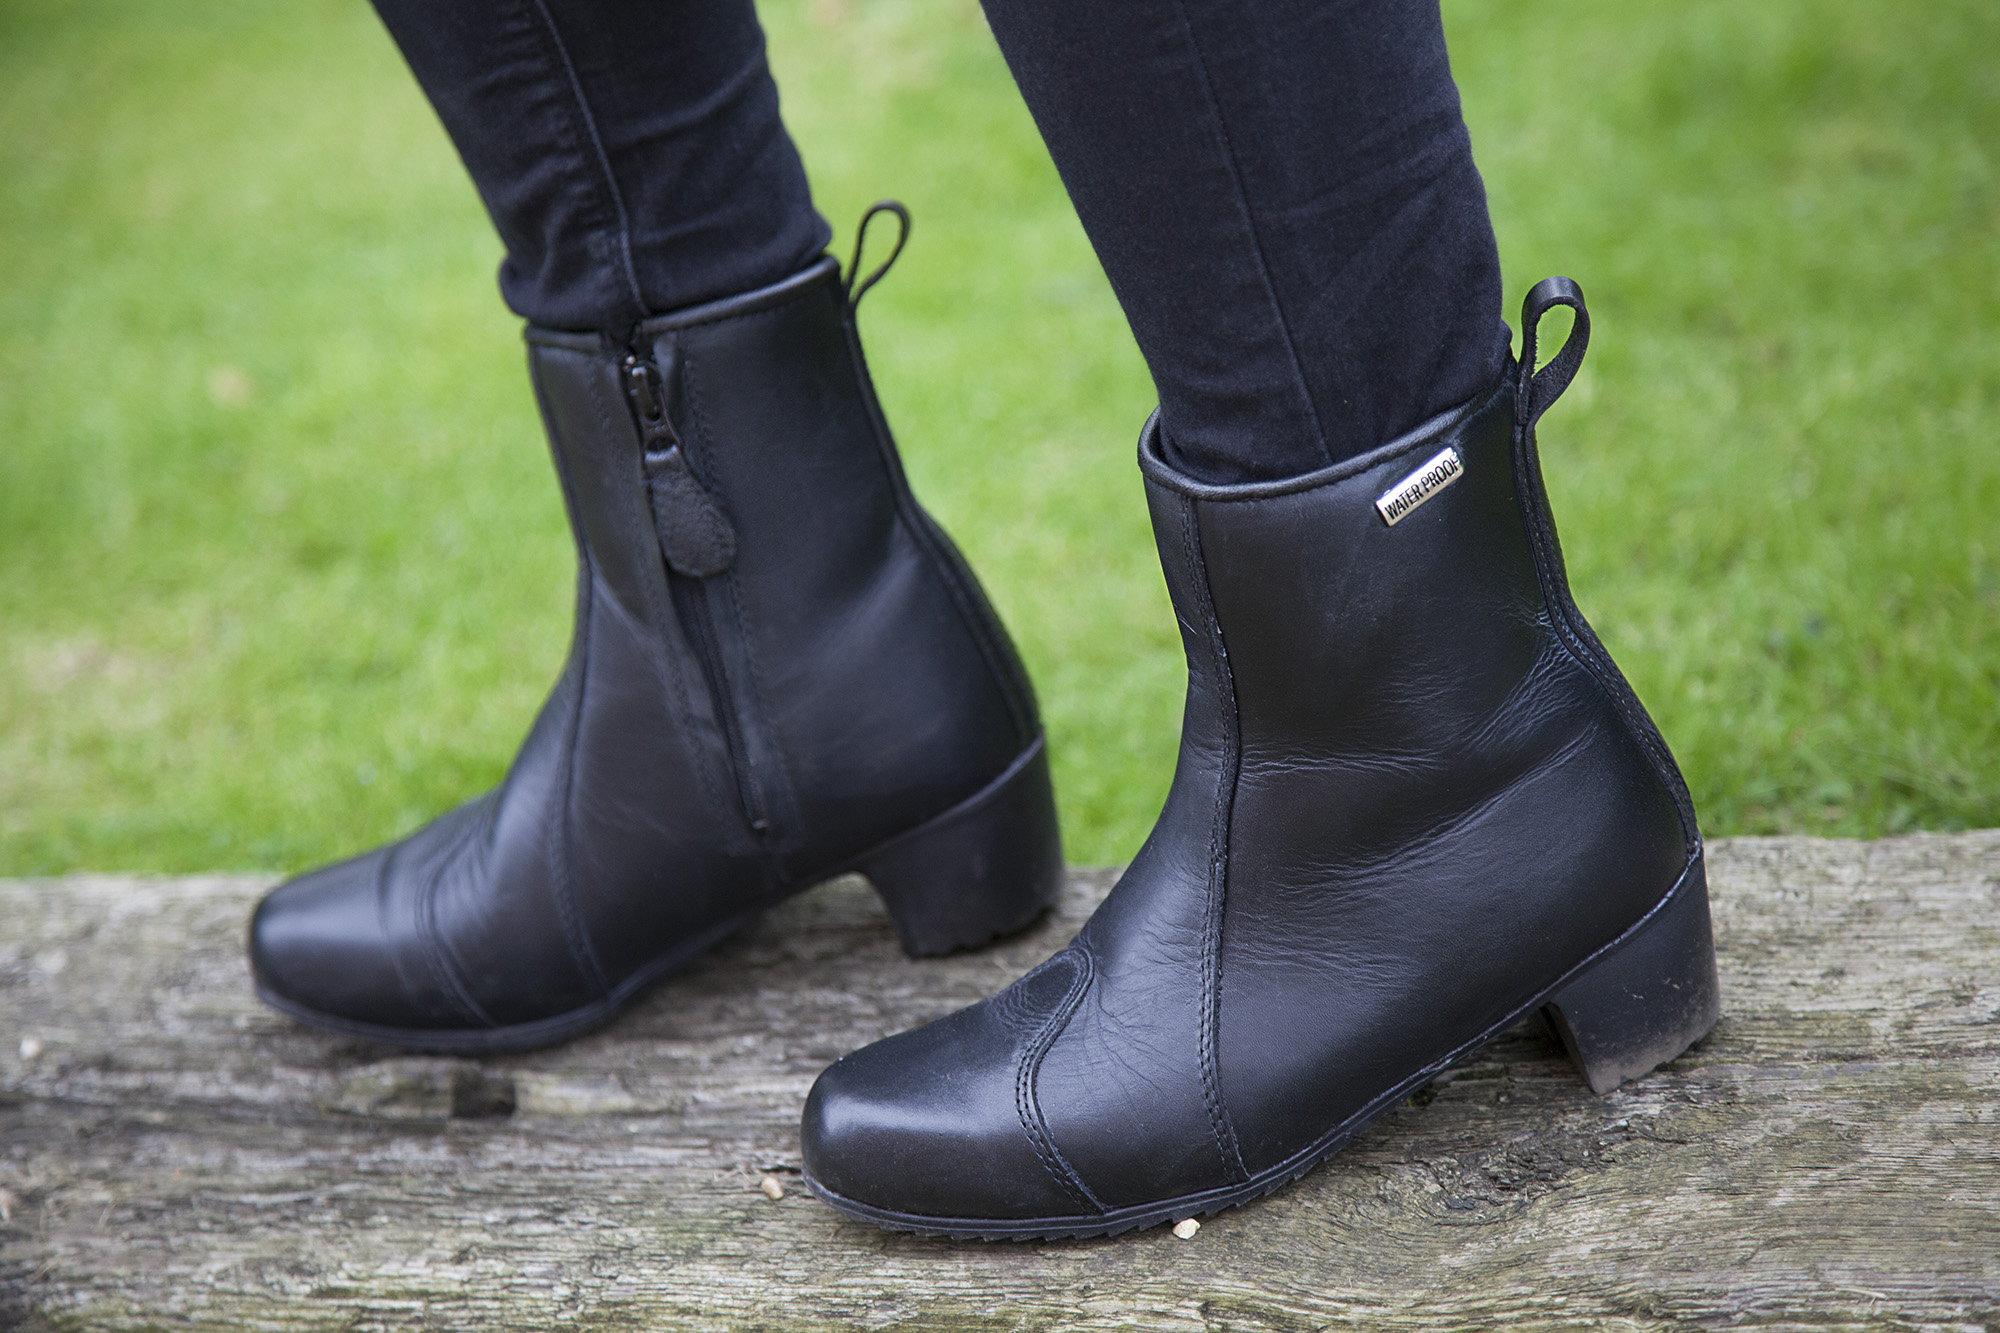 Review: Duchinni Milan women's boots, £89.99